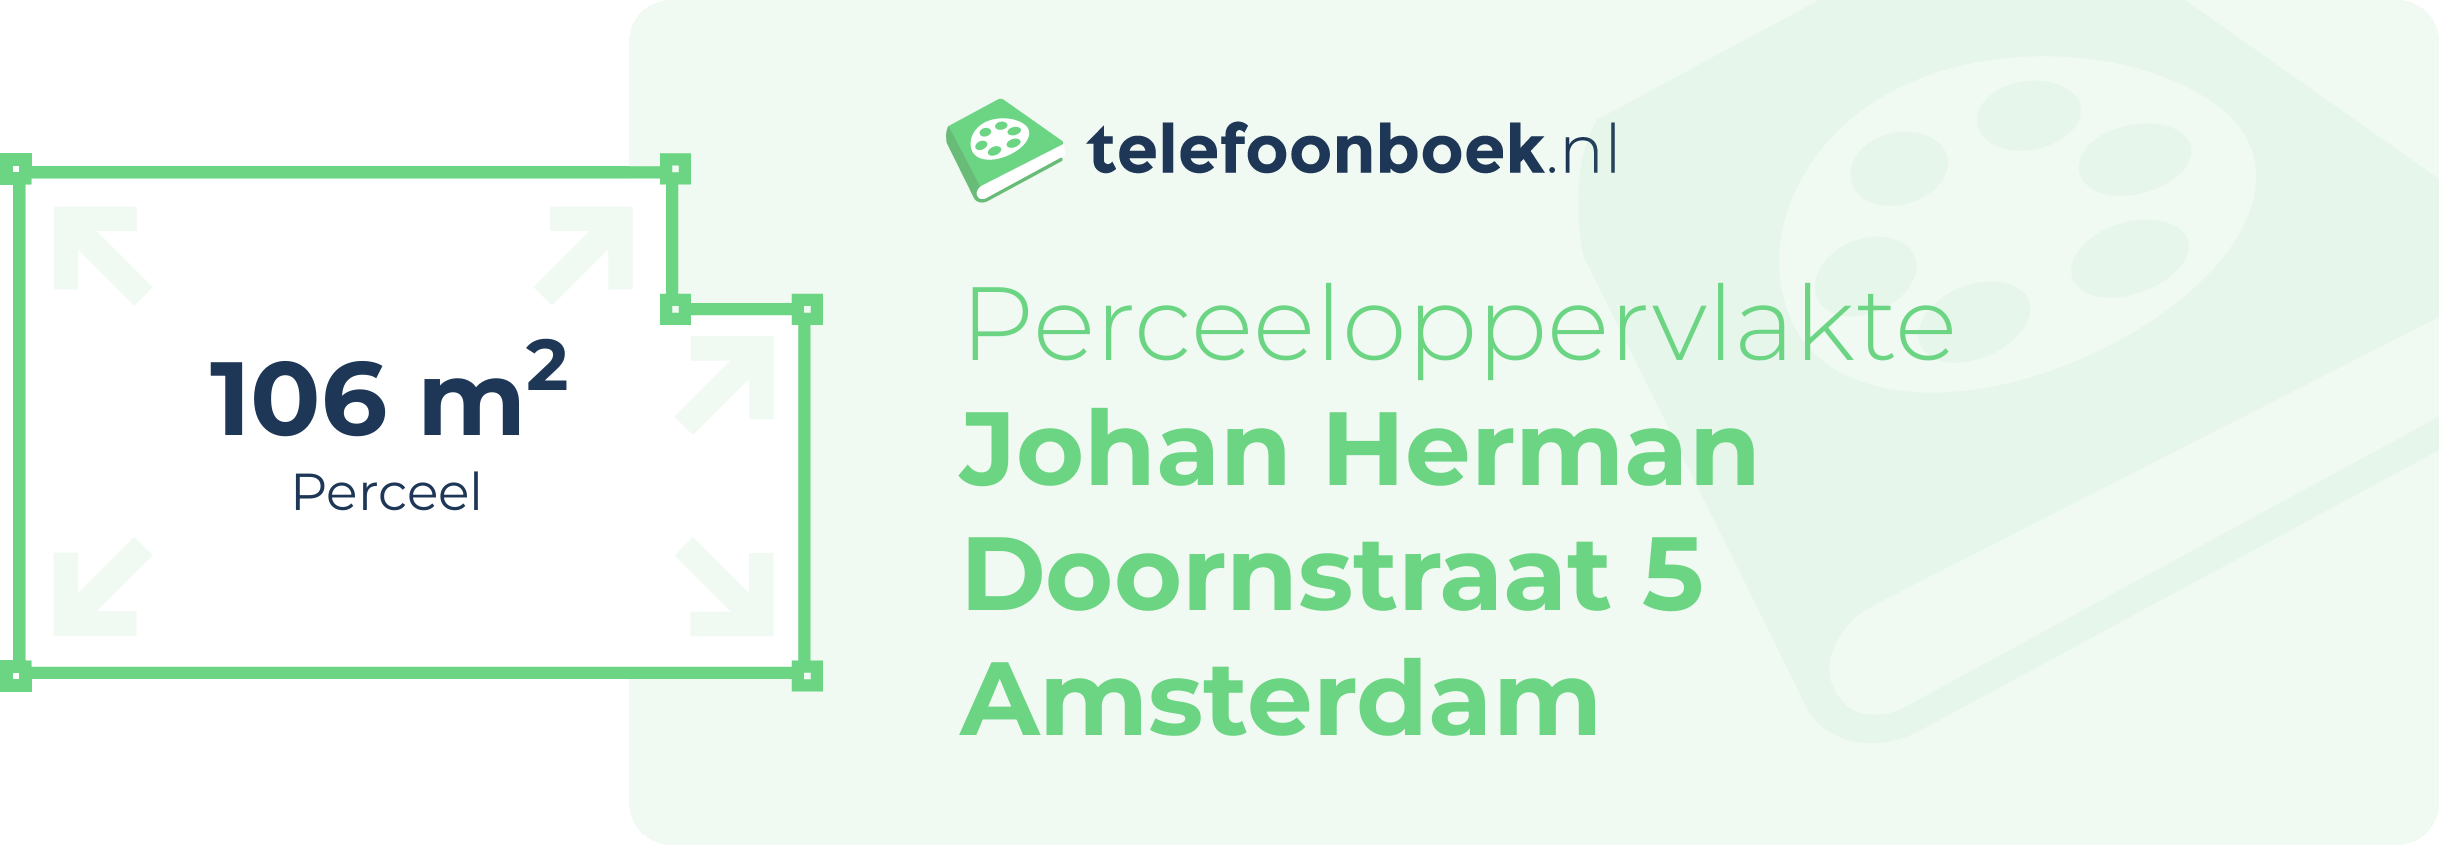 Perceeloppervlakte Johan Herman Doornstraat 5 Amsterdam